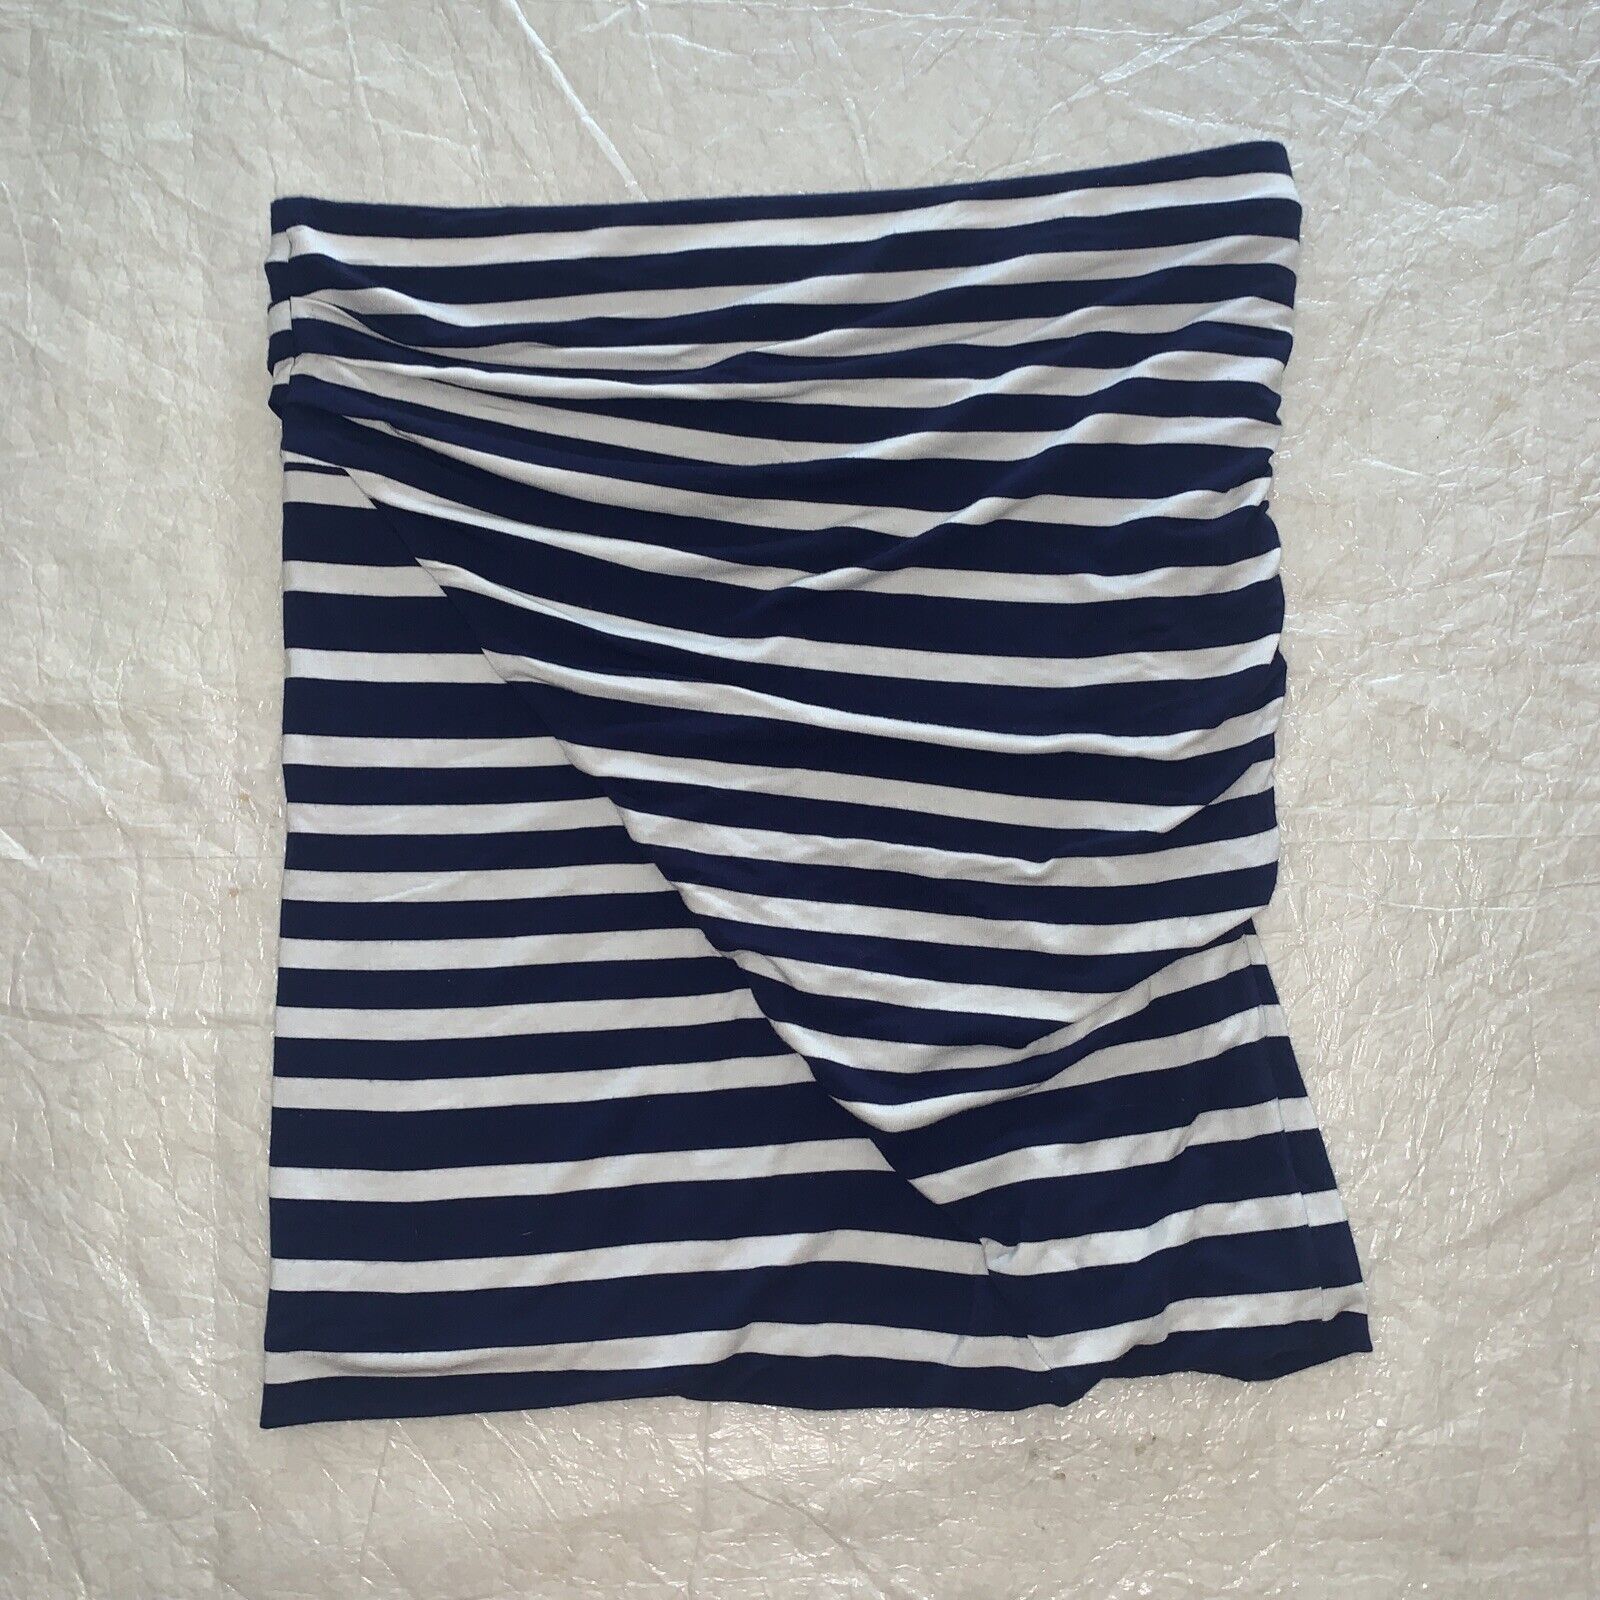 Cabi Skirt Womens Blaine Tube Top Skirt, #789, Navy Blue White Striped ...